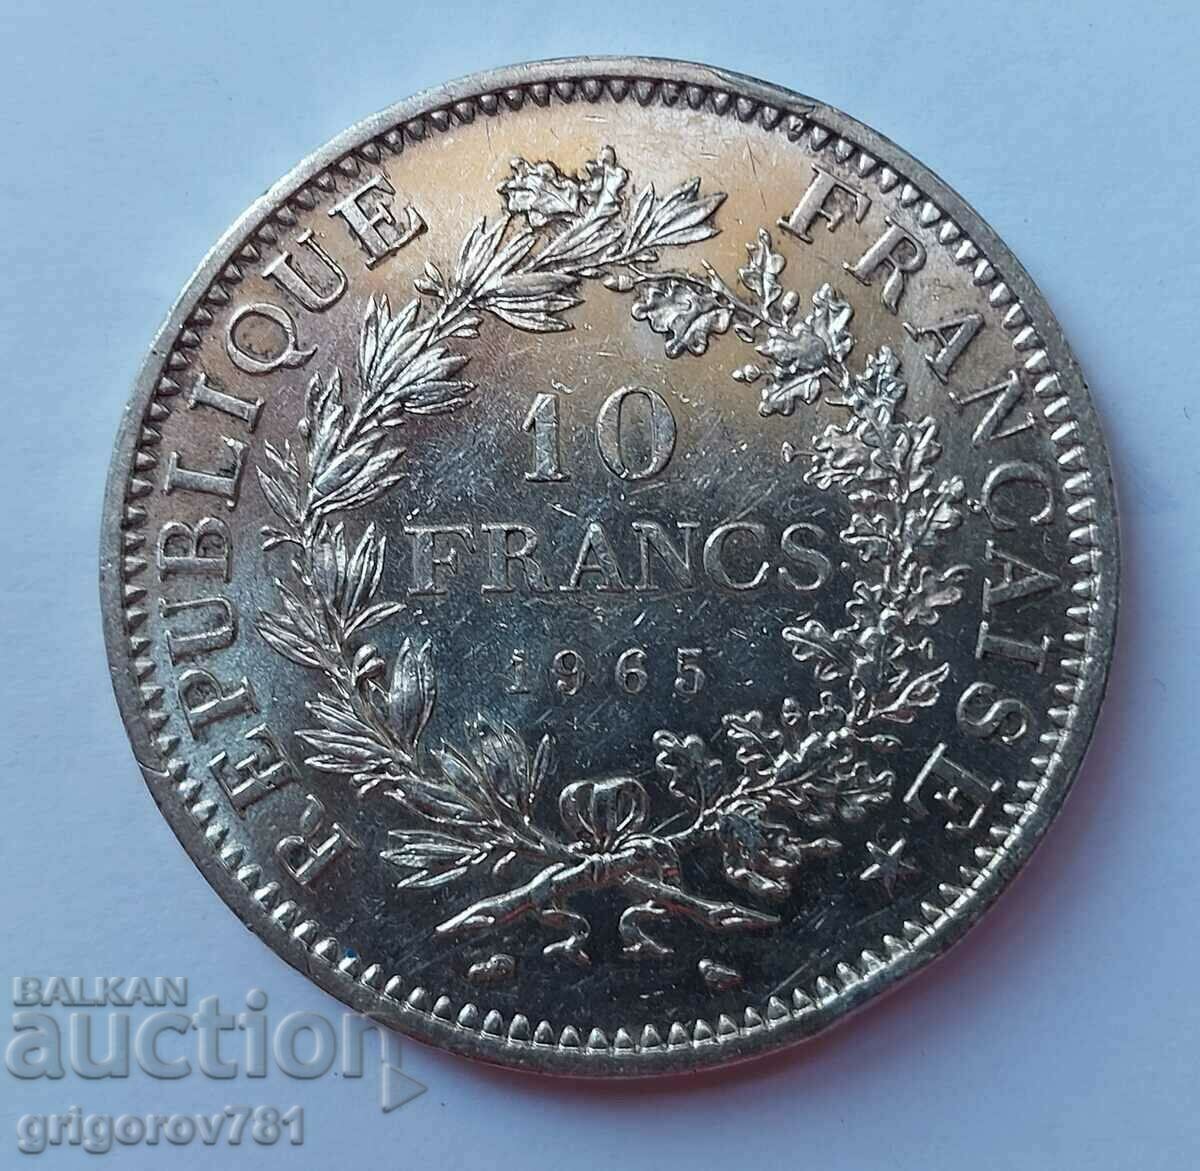 Ασημένιο 10 φράγκα Γαλλία 1965 - ασημένιο νόμισμα # 5